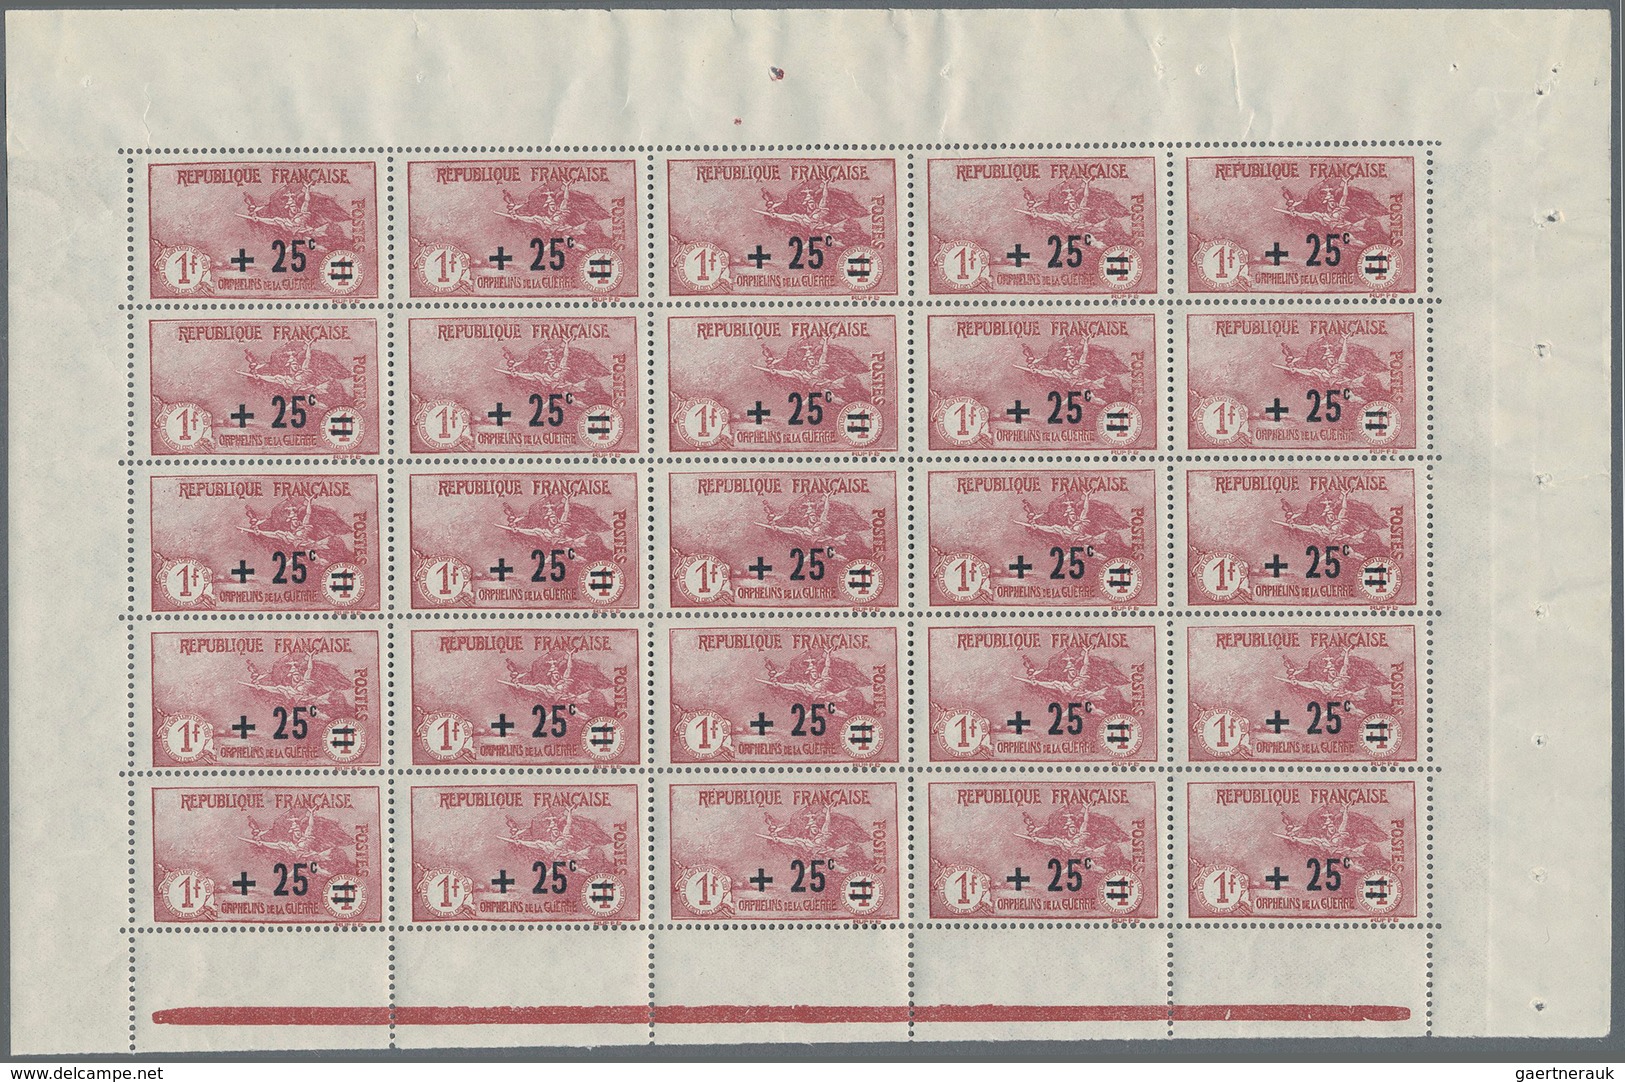 13714 Frankreich: 1922, War Orphans, 1fr. + 25c. Carmine, Pane Of 25 Stamps, Unmounted Mint. Maury 168, 1. - Gebraucht